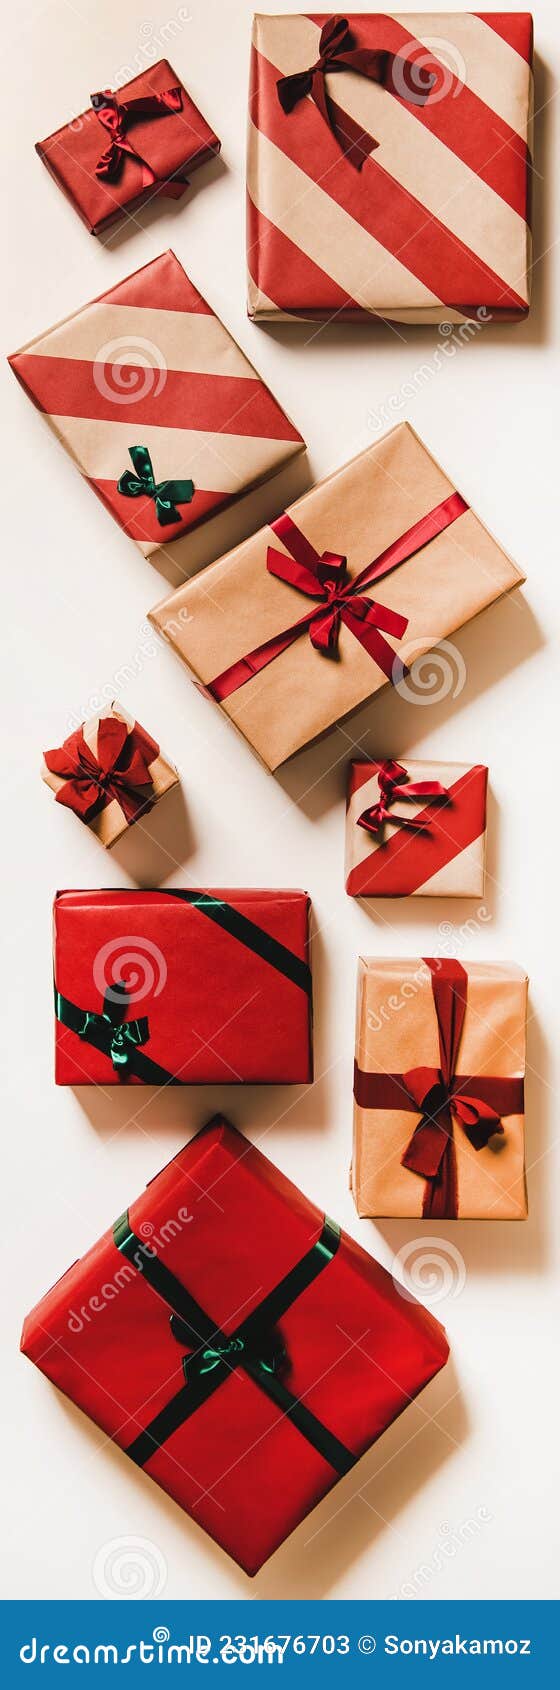 Pacchi Regalo Festivi in Carta Da Imballaggio Per La Composizione Verticale  Di Natale Immagine Stock - Immagine di casella, arco: 231676703